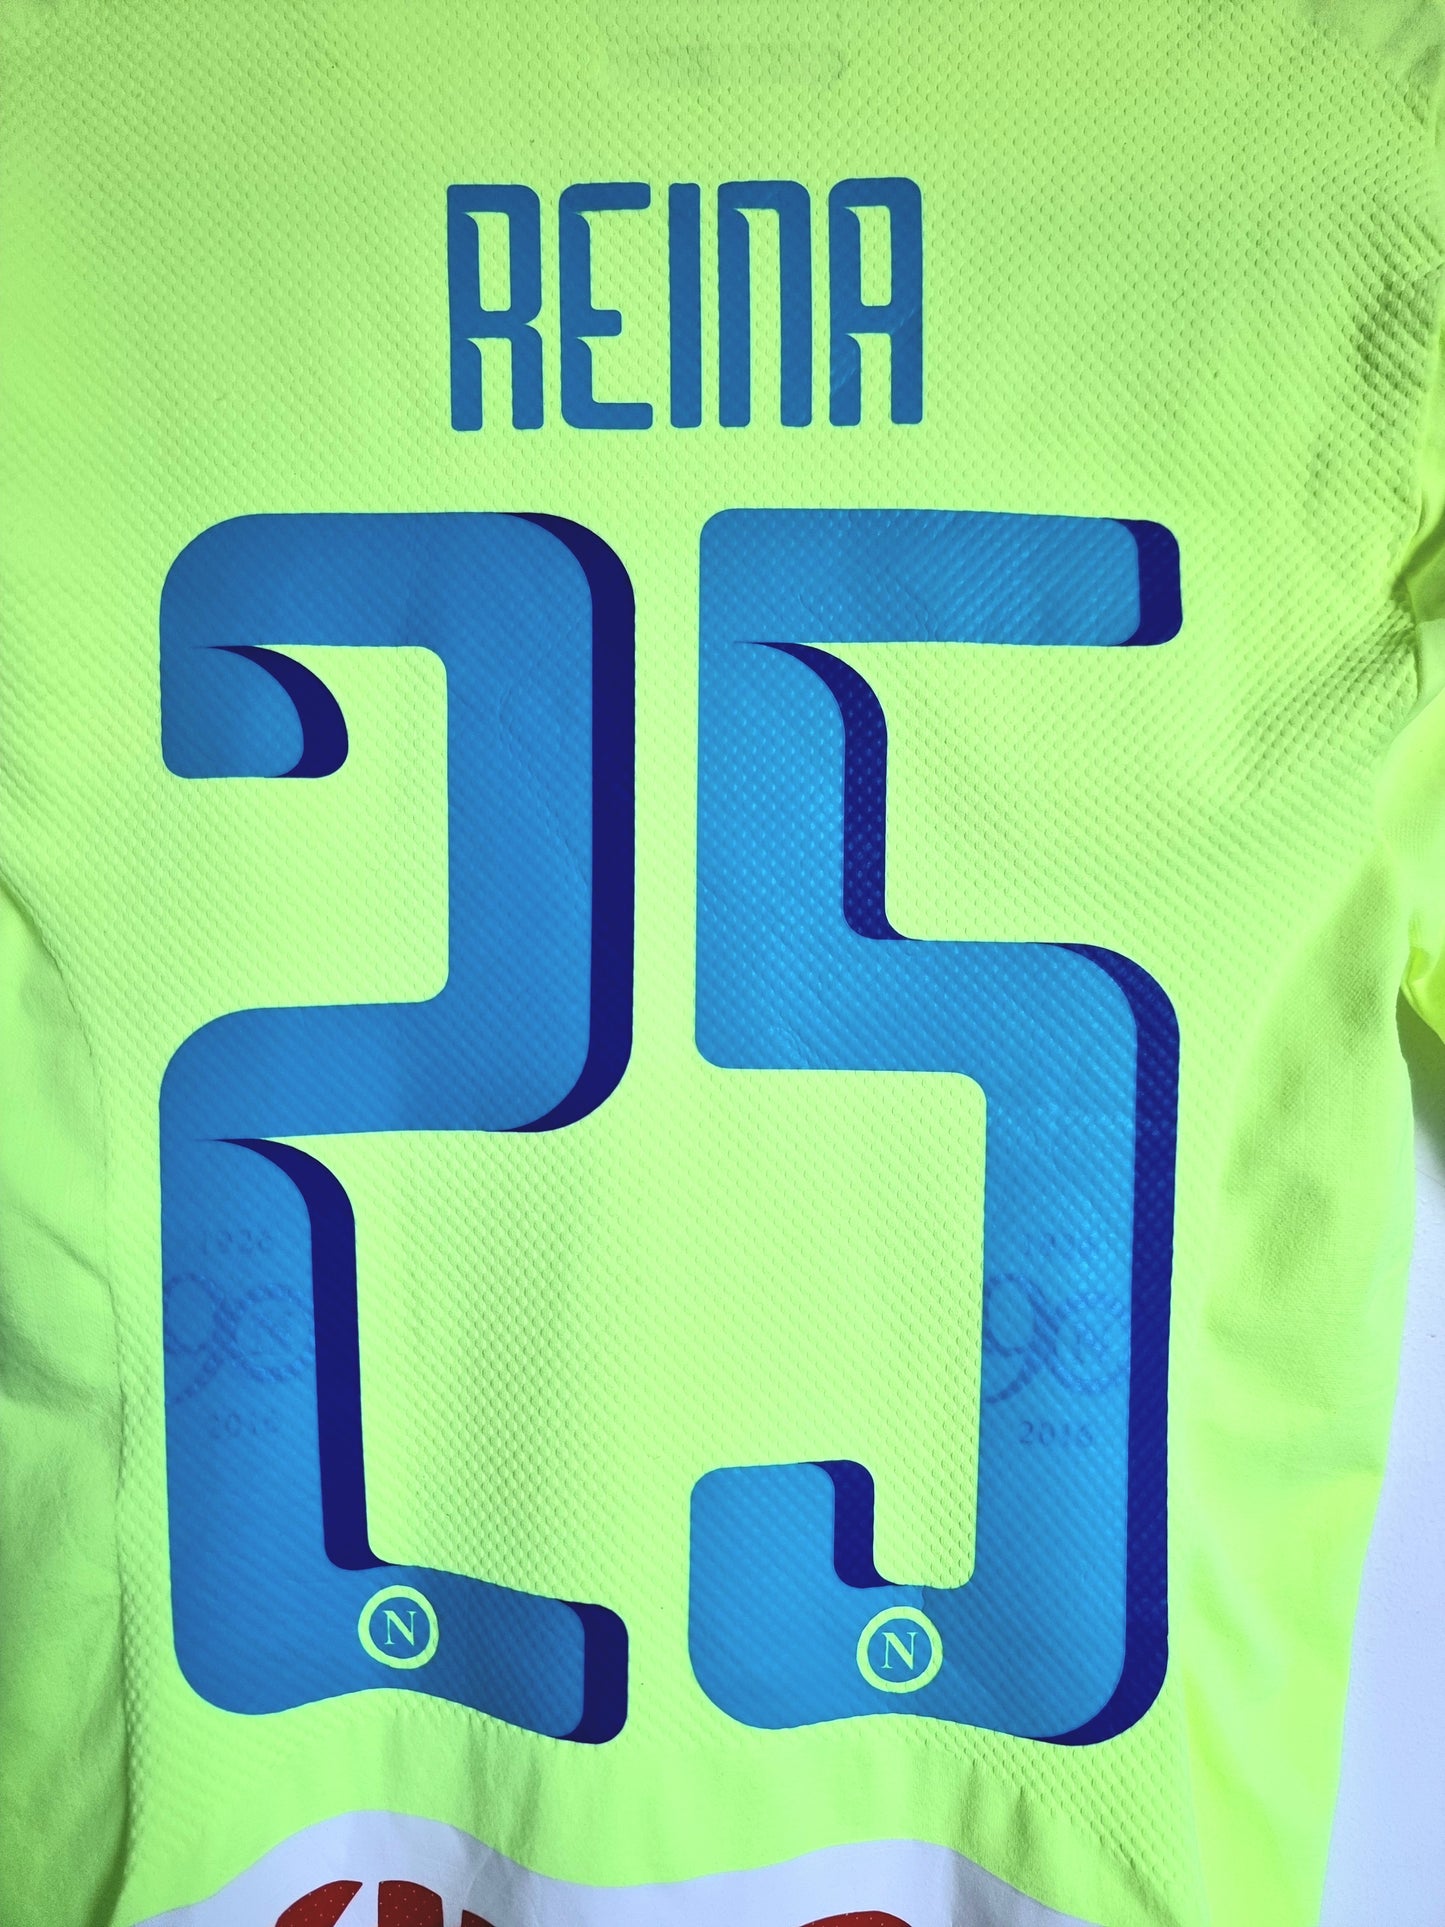 Kappa Kombat Skin Napoli 16/17 'Reina 1' Player Spec Goalkeeper Shirt Medium / Large